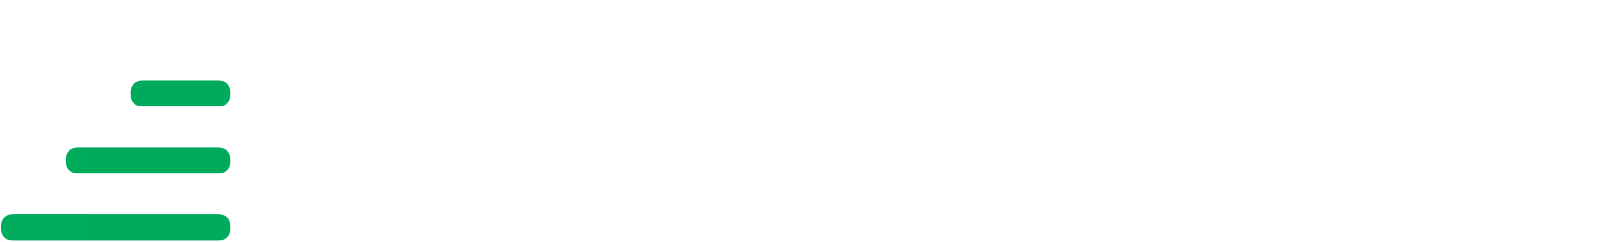 Transurban logo grand pour les fonds sombres (PNG transparent)